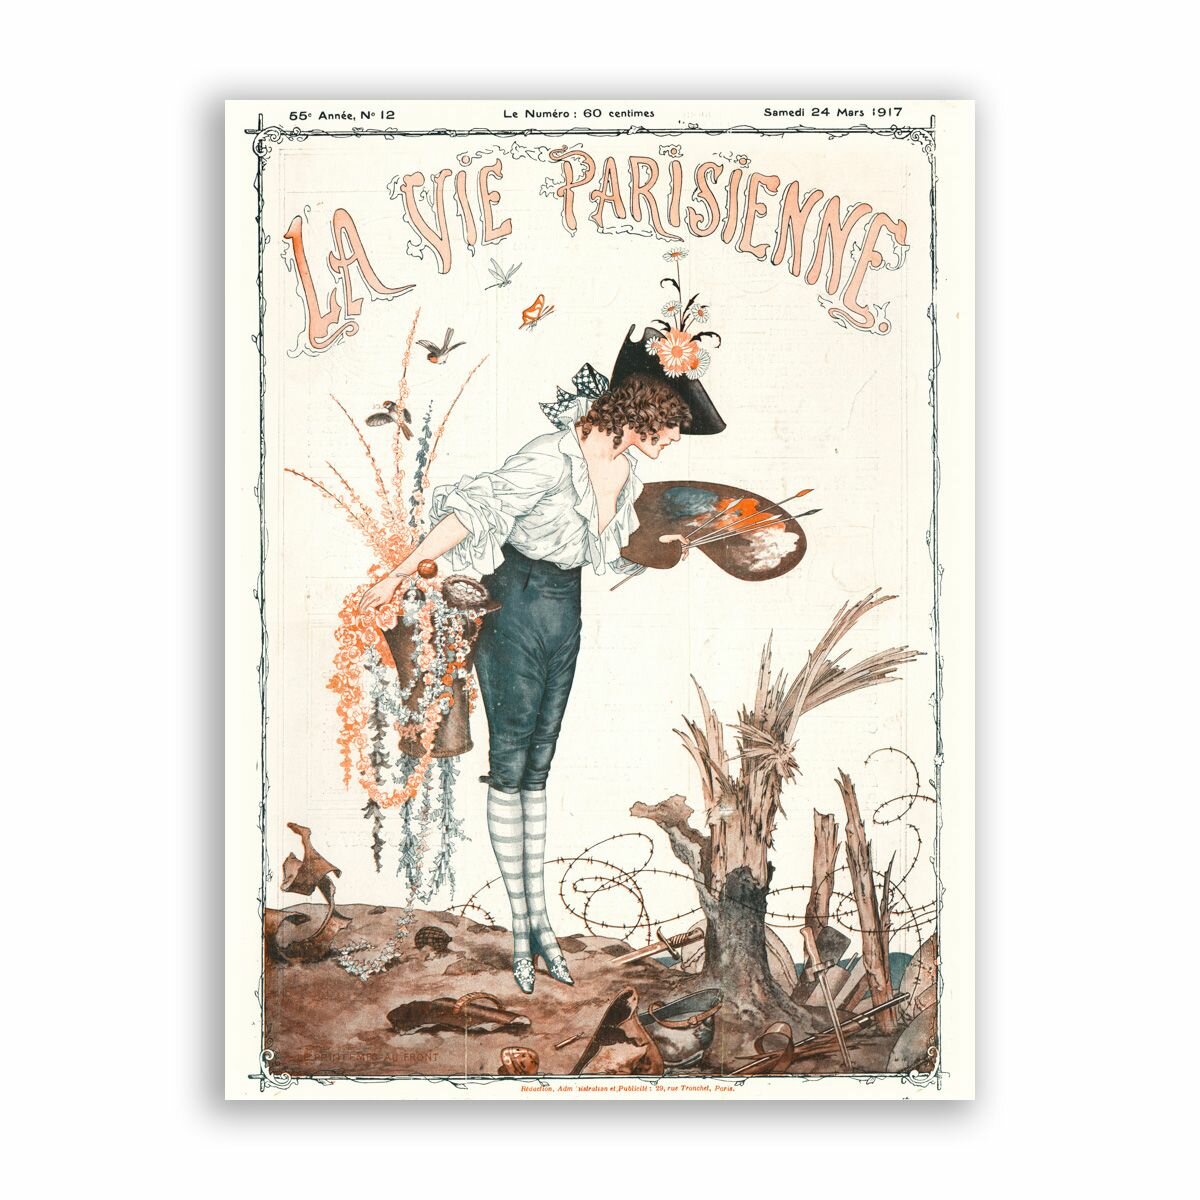 Постер на бумаге в стиле Пин-ап / La Vie Parisienne / Размер 30 x 40 см